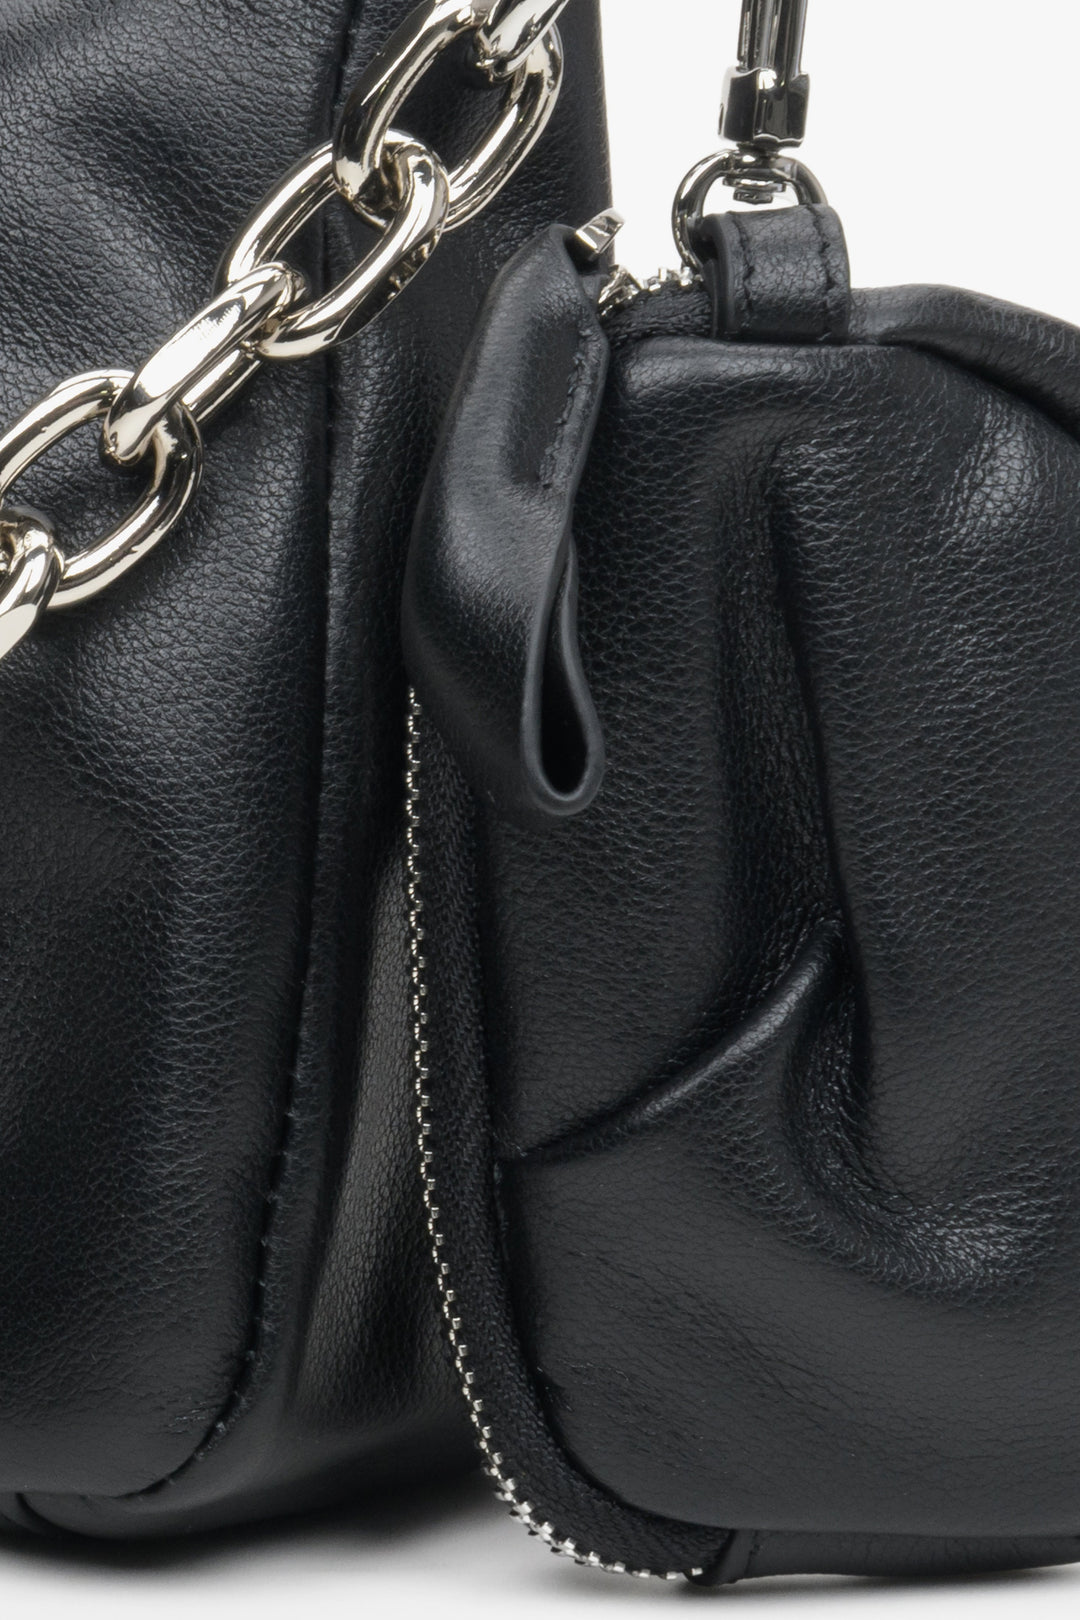 Mała, stylowa torebka damska w kolorze czarnym ze skóry naturalnej z łańcuszkiem - zbliżenie na dodatkową saszetkę.